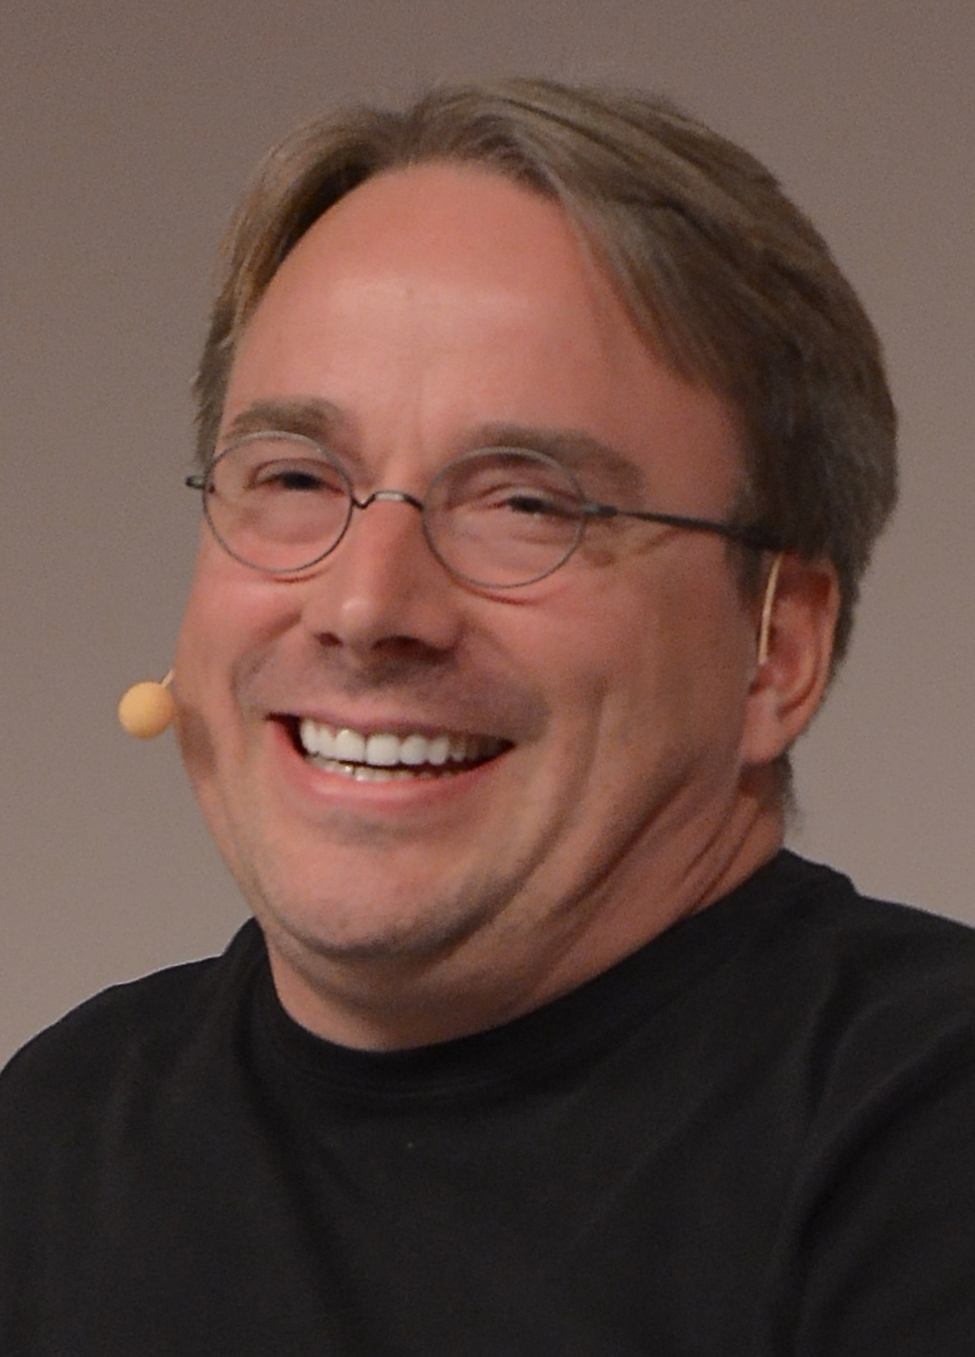 auteur Linus Torvalds de la citation Je perds le sommeil si je finis par me sentir mal à propos de quelque chose que j'ai dit. Habituellement, cela se produit lorsque j'envoie quelque chose sans l'avoir lu plusieurs fois, ou lorsque j'appelle des noms de quelqu'un.